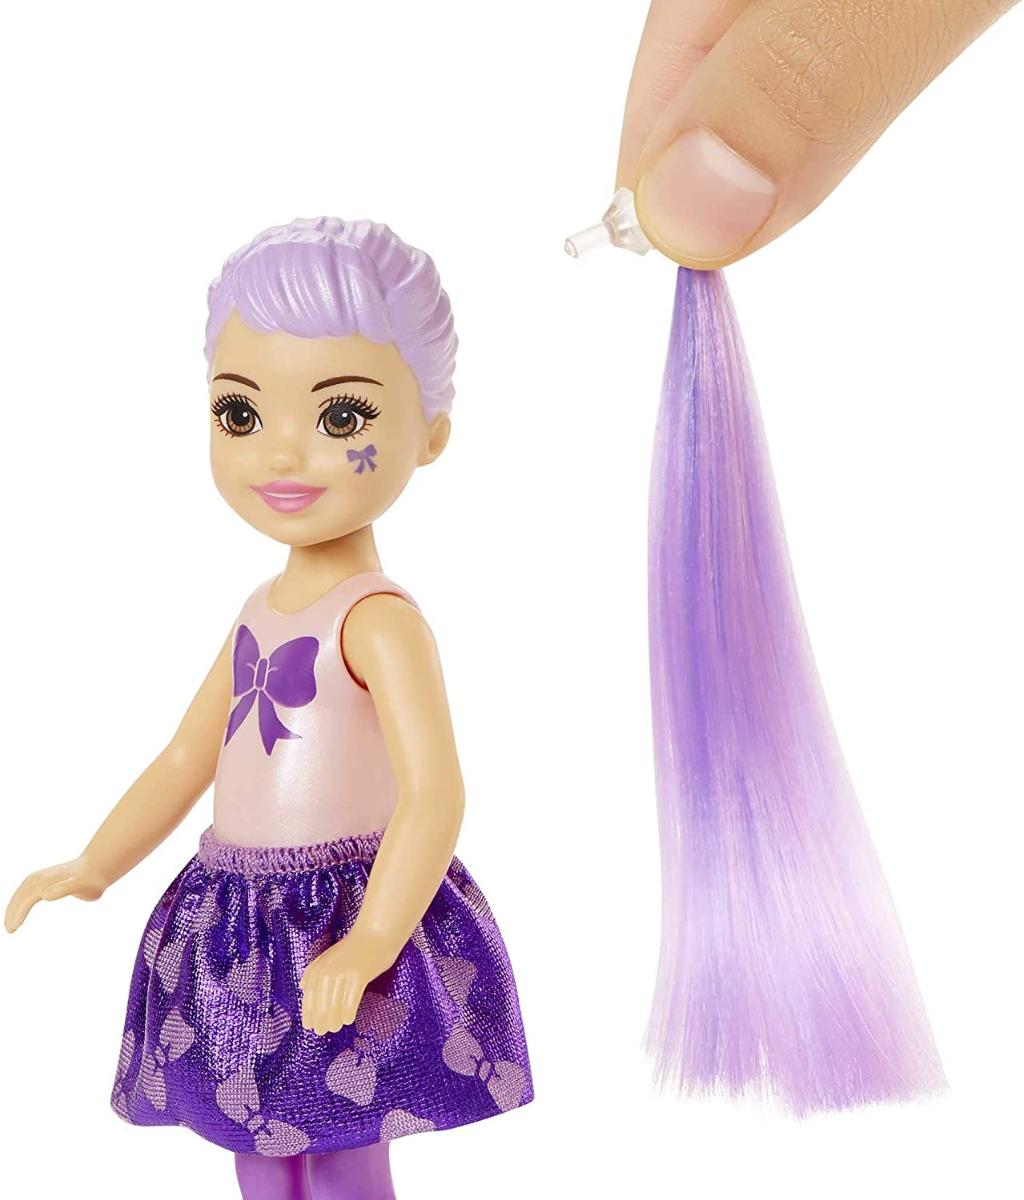 Original barbie chelsea cor revelar boneca surpresa pacote